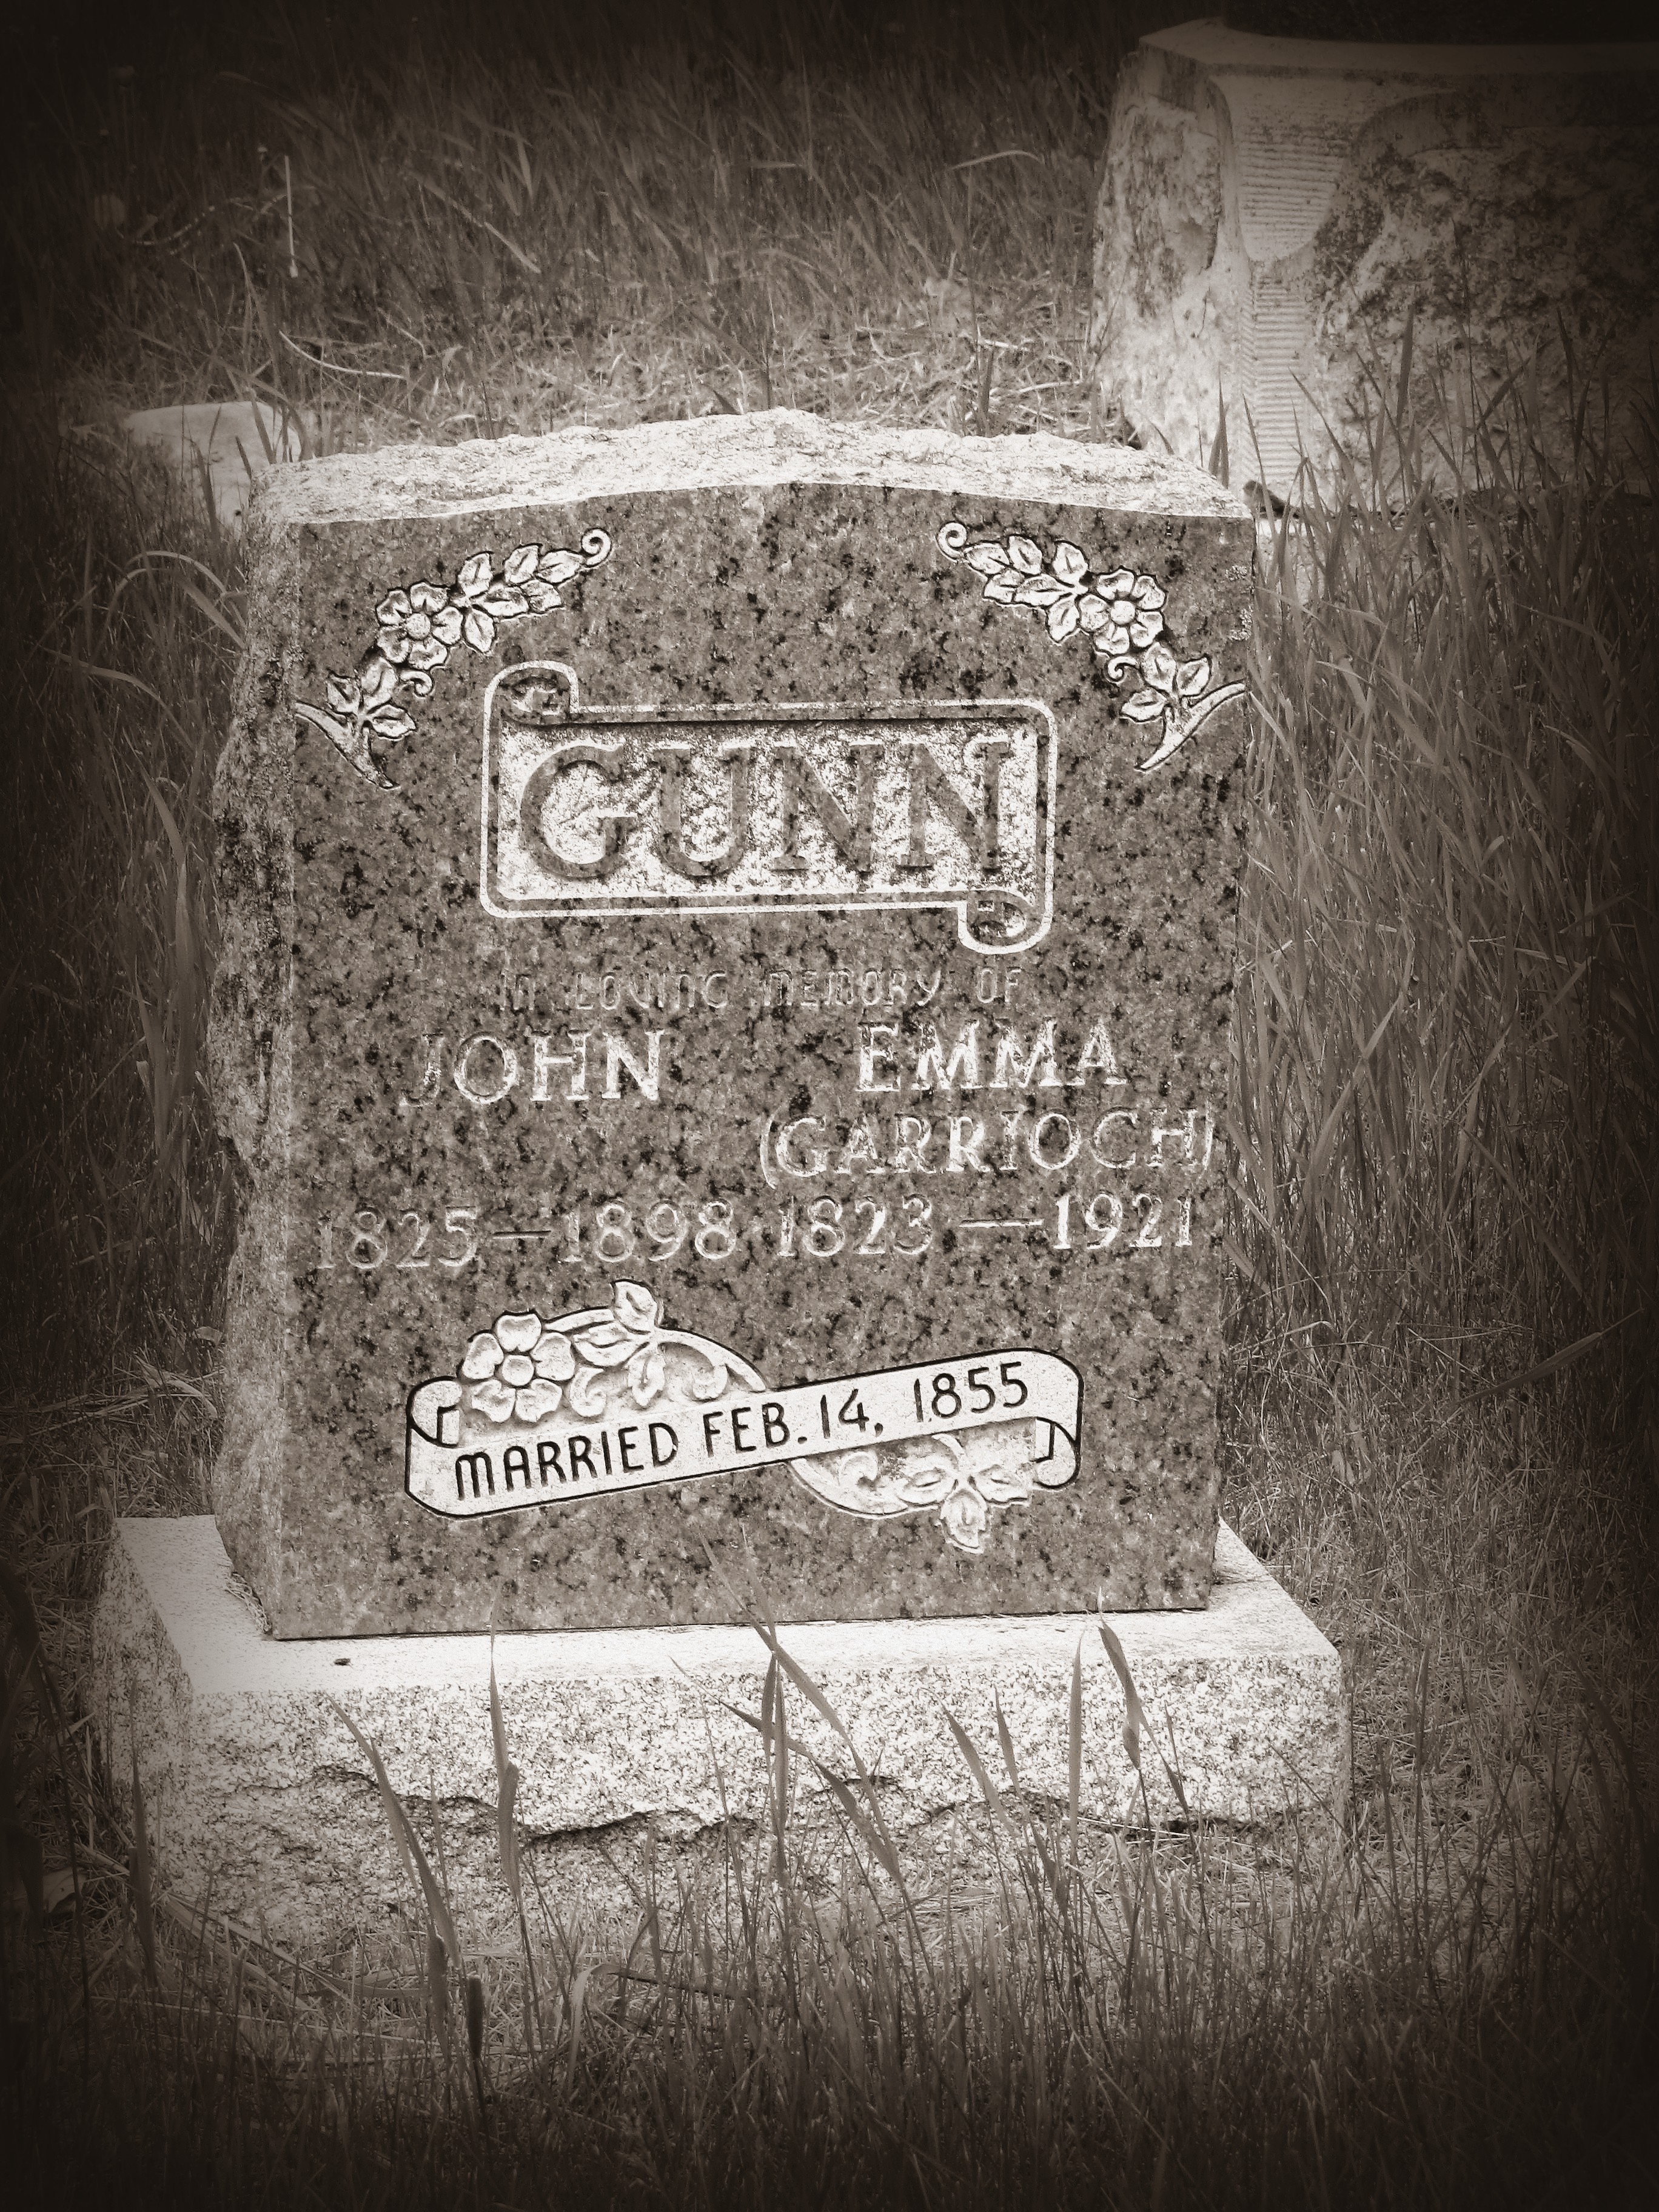 Gunn's Stone